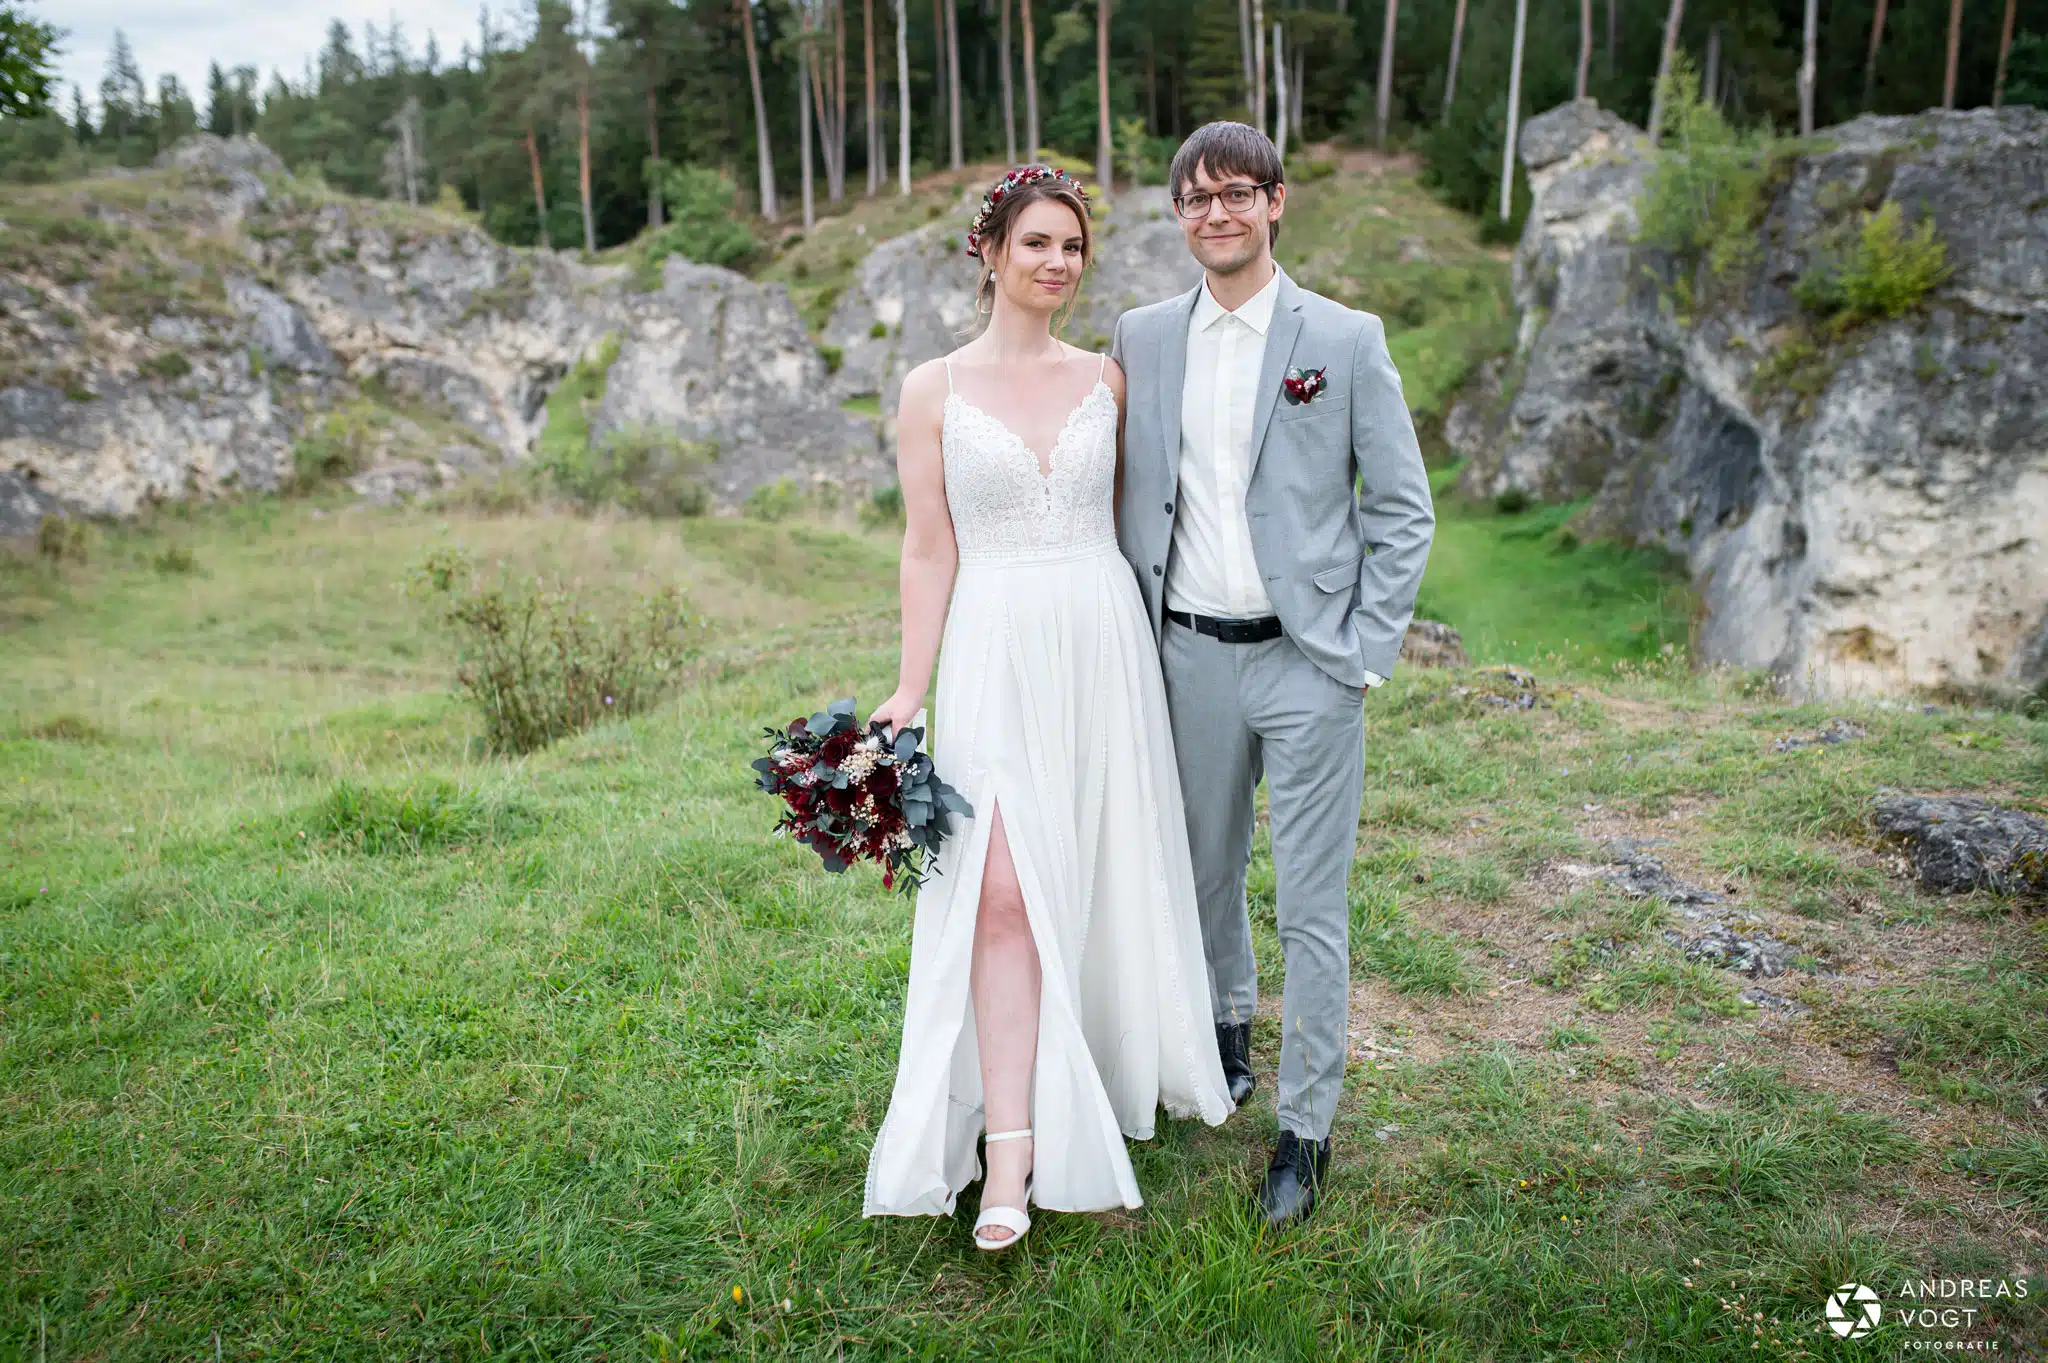 Jasmin und Matze bei ihrem Brautpaarfotoshooting im Wental - Fotograf Andreas Vogt